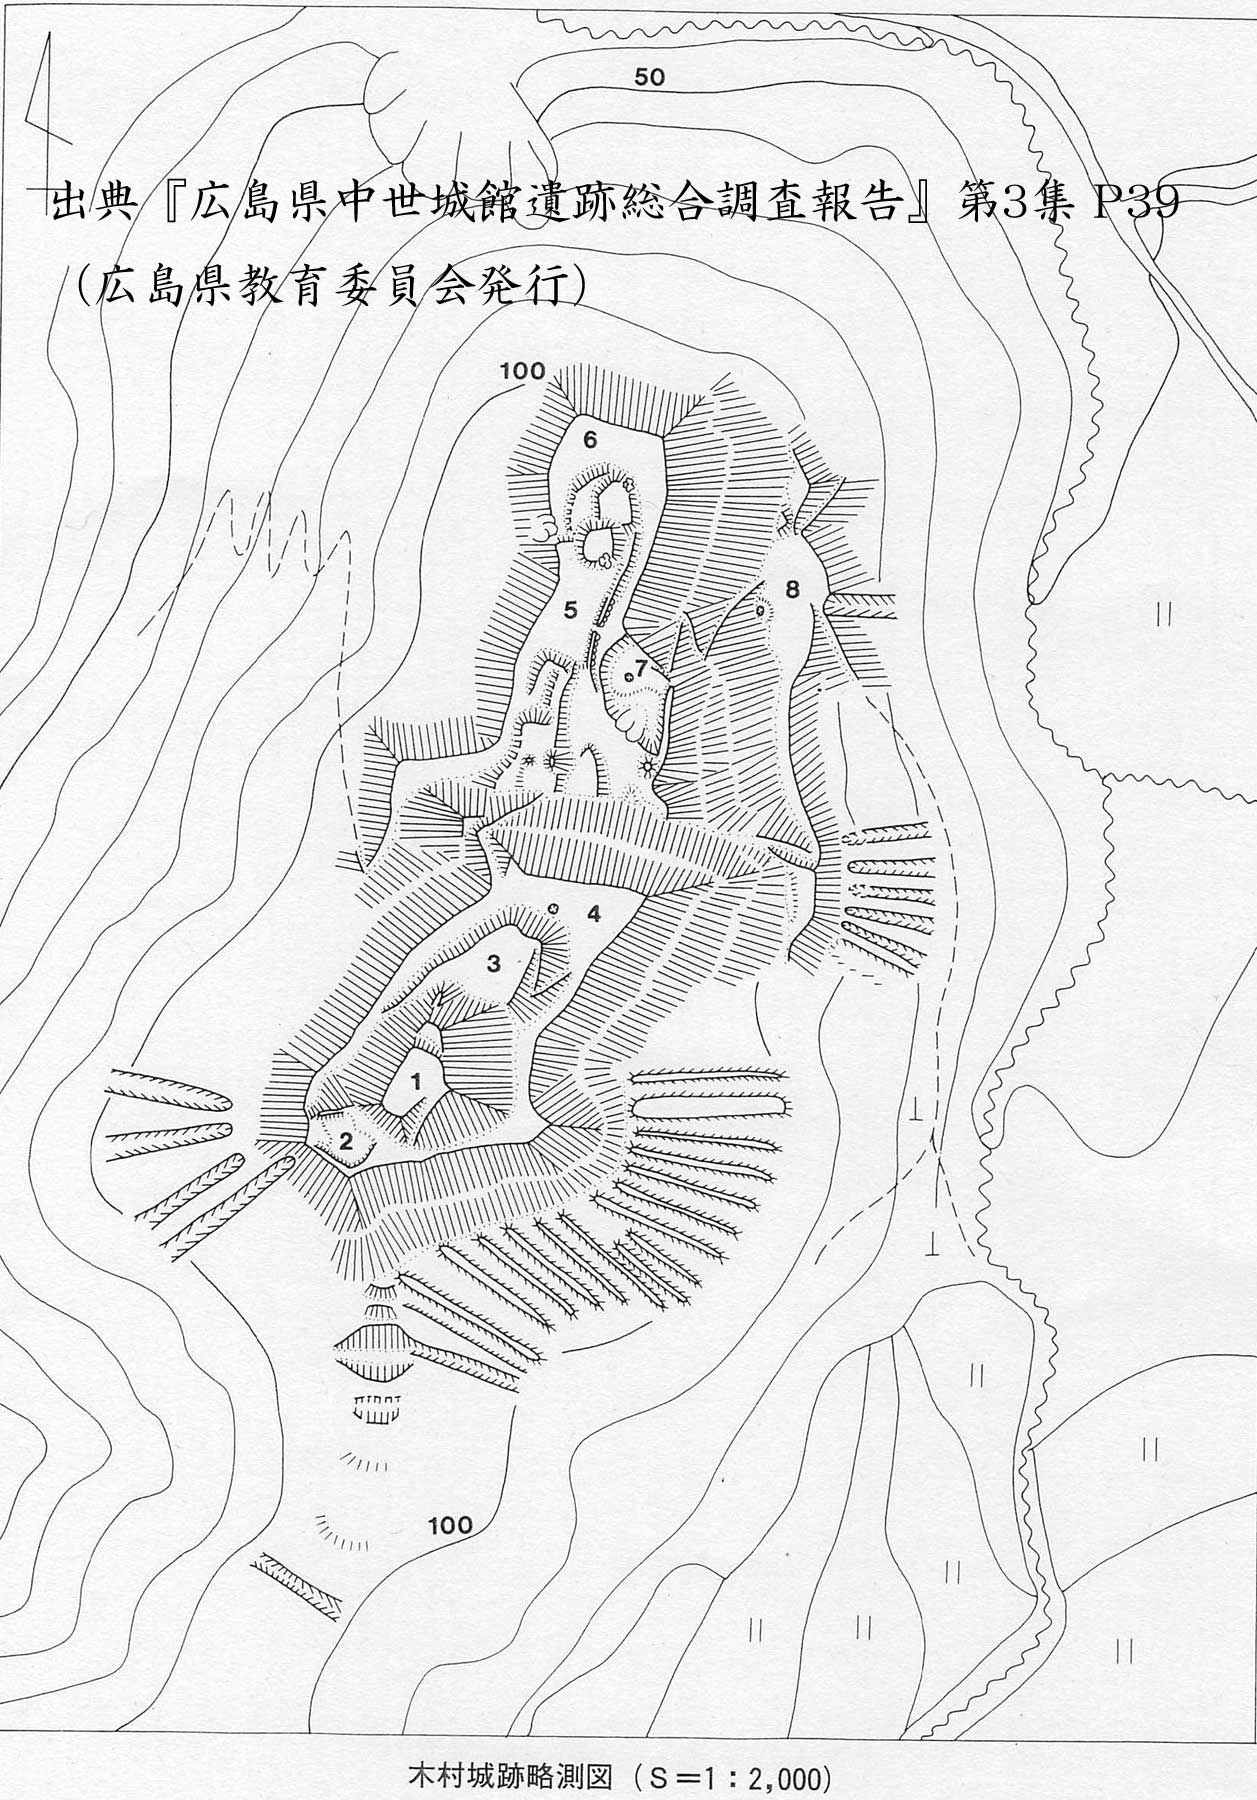 木村城の縄張図